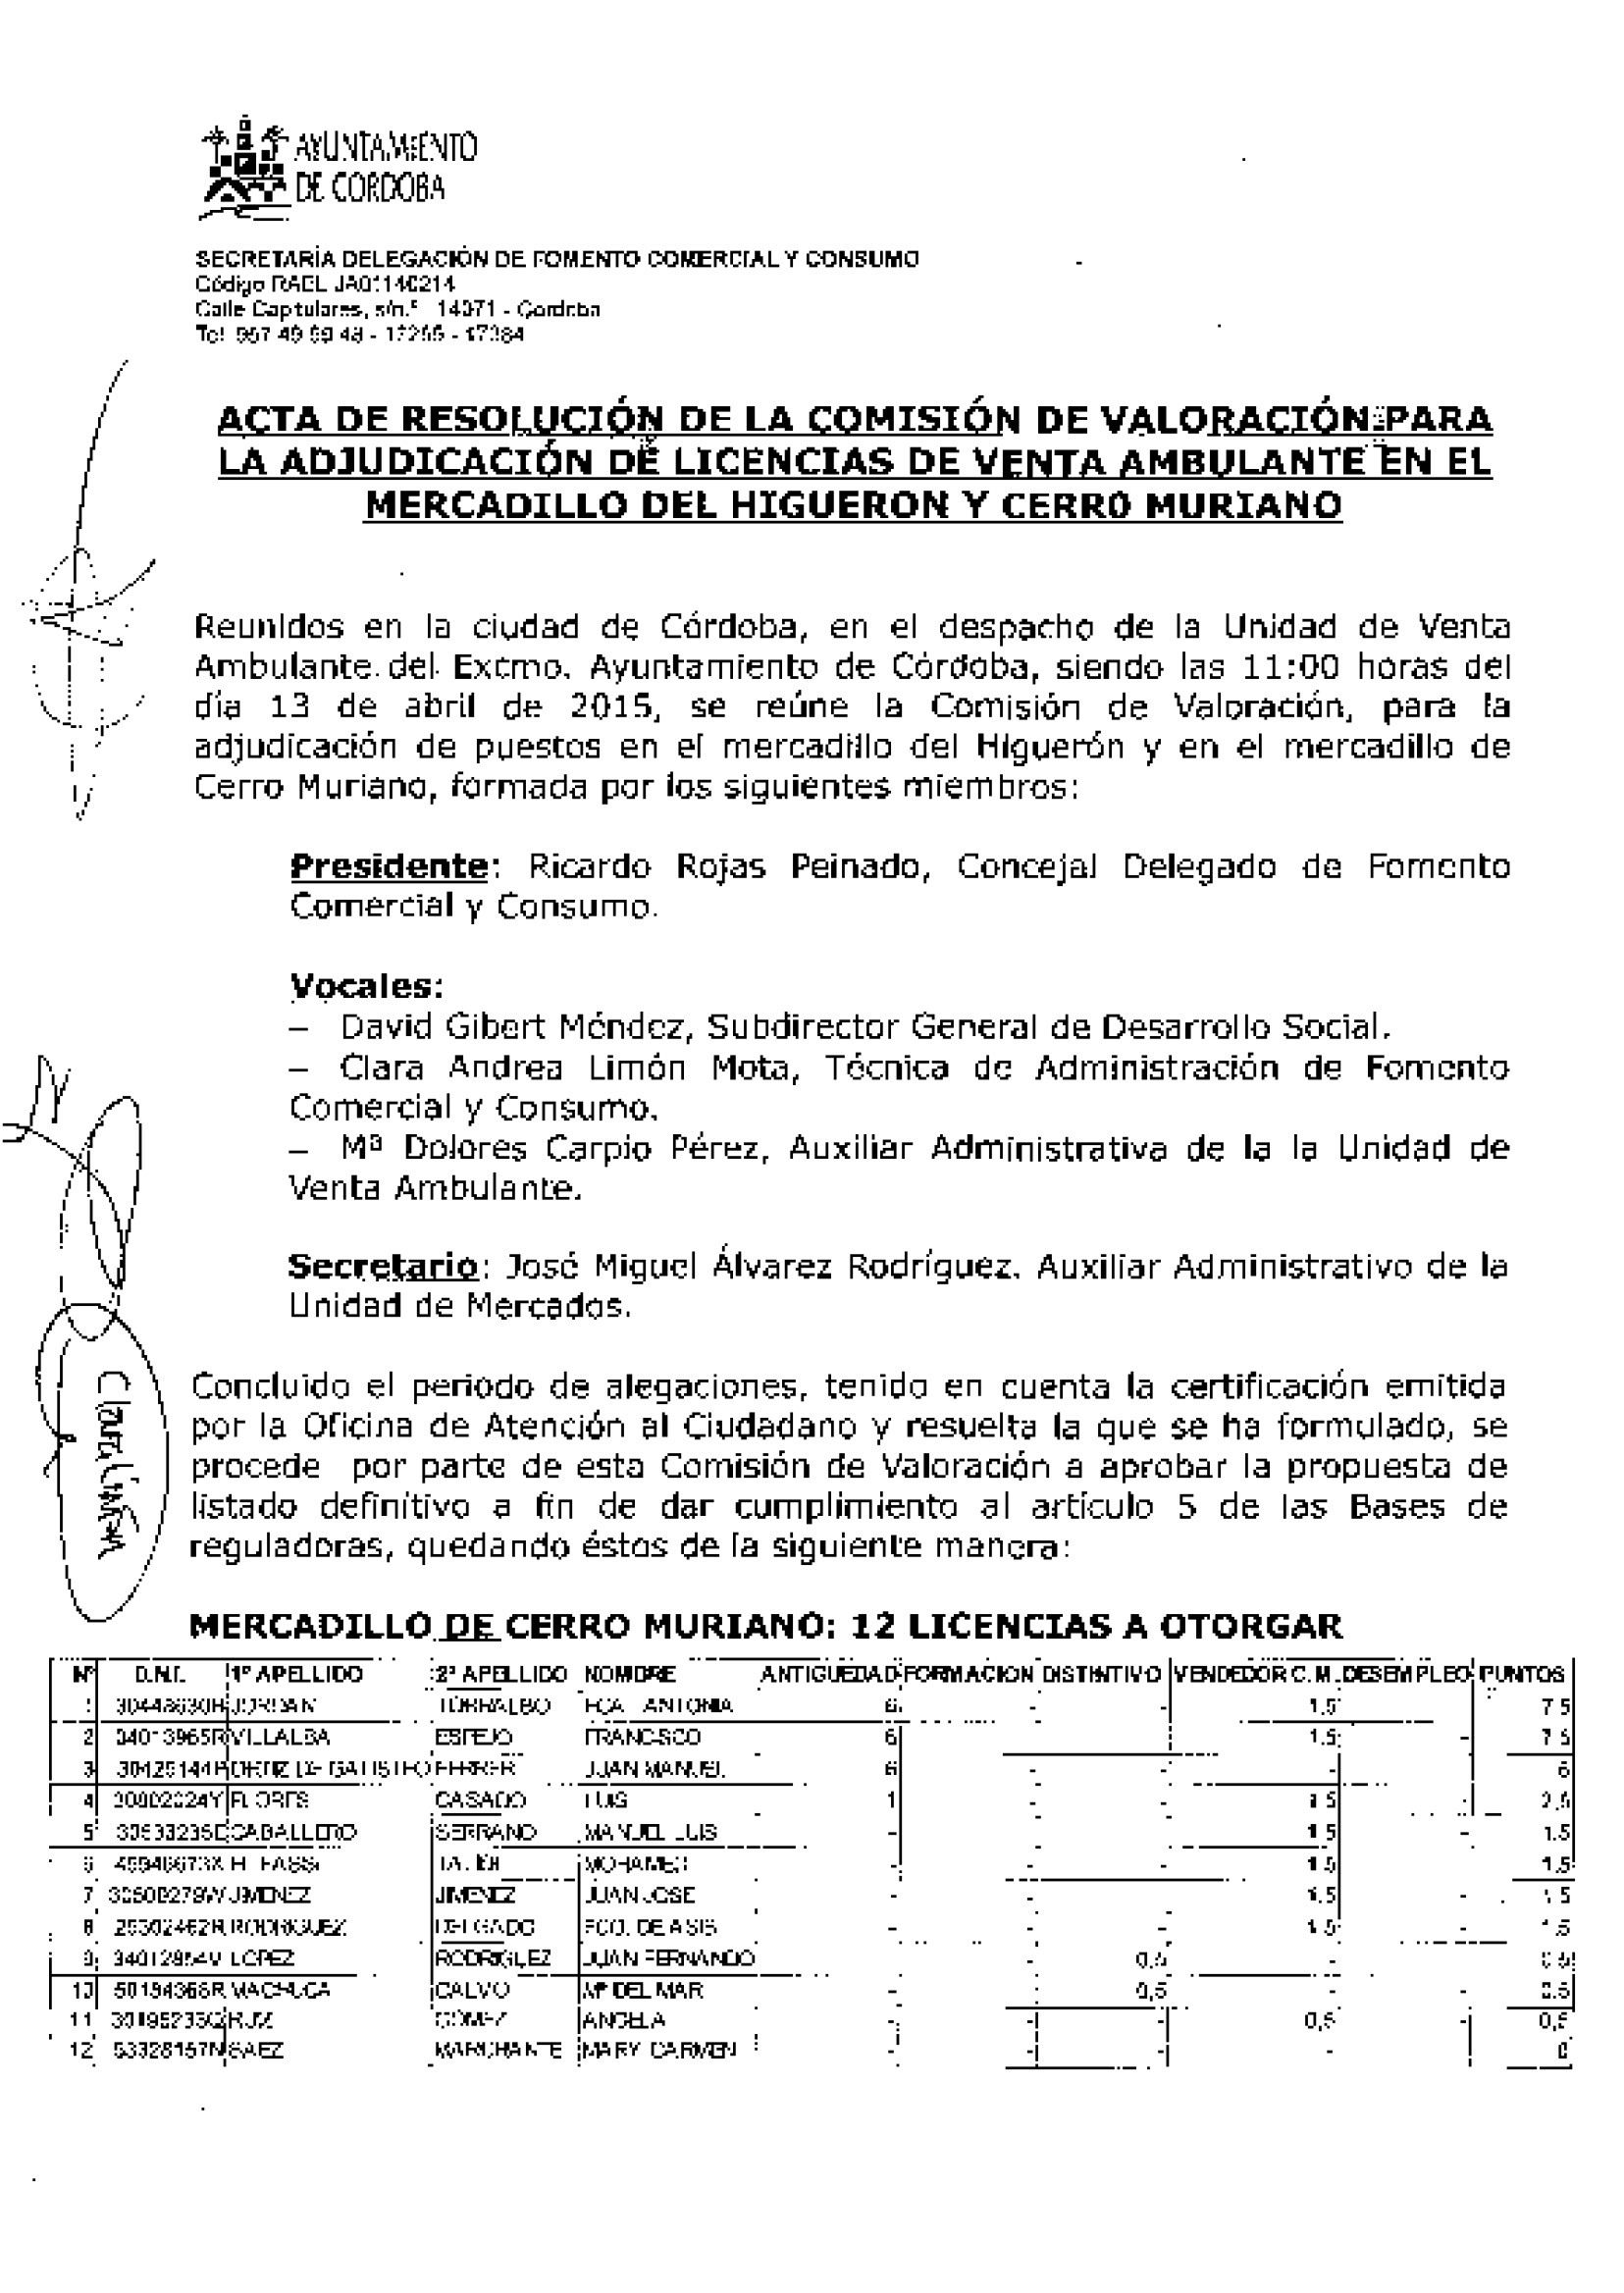 ventaambu acta resolucion licencias Higueron Muriano Página 1